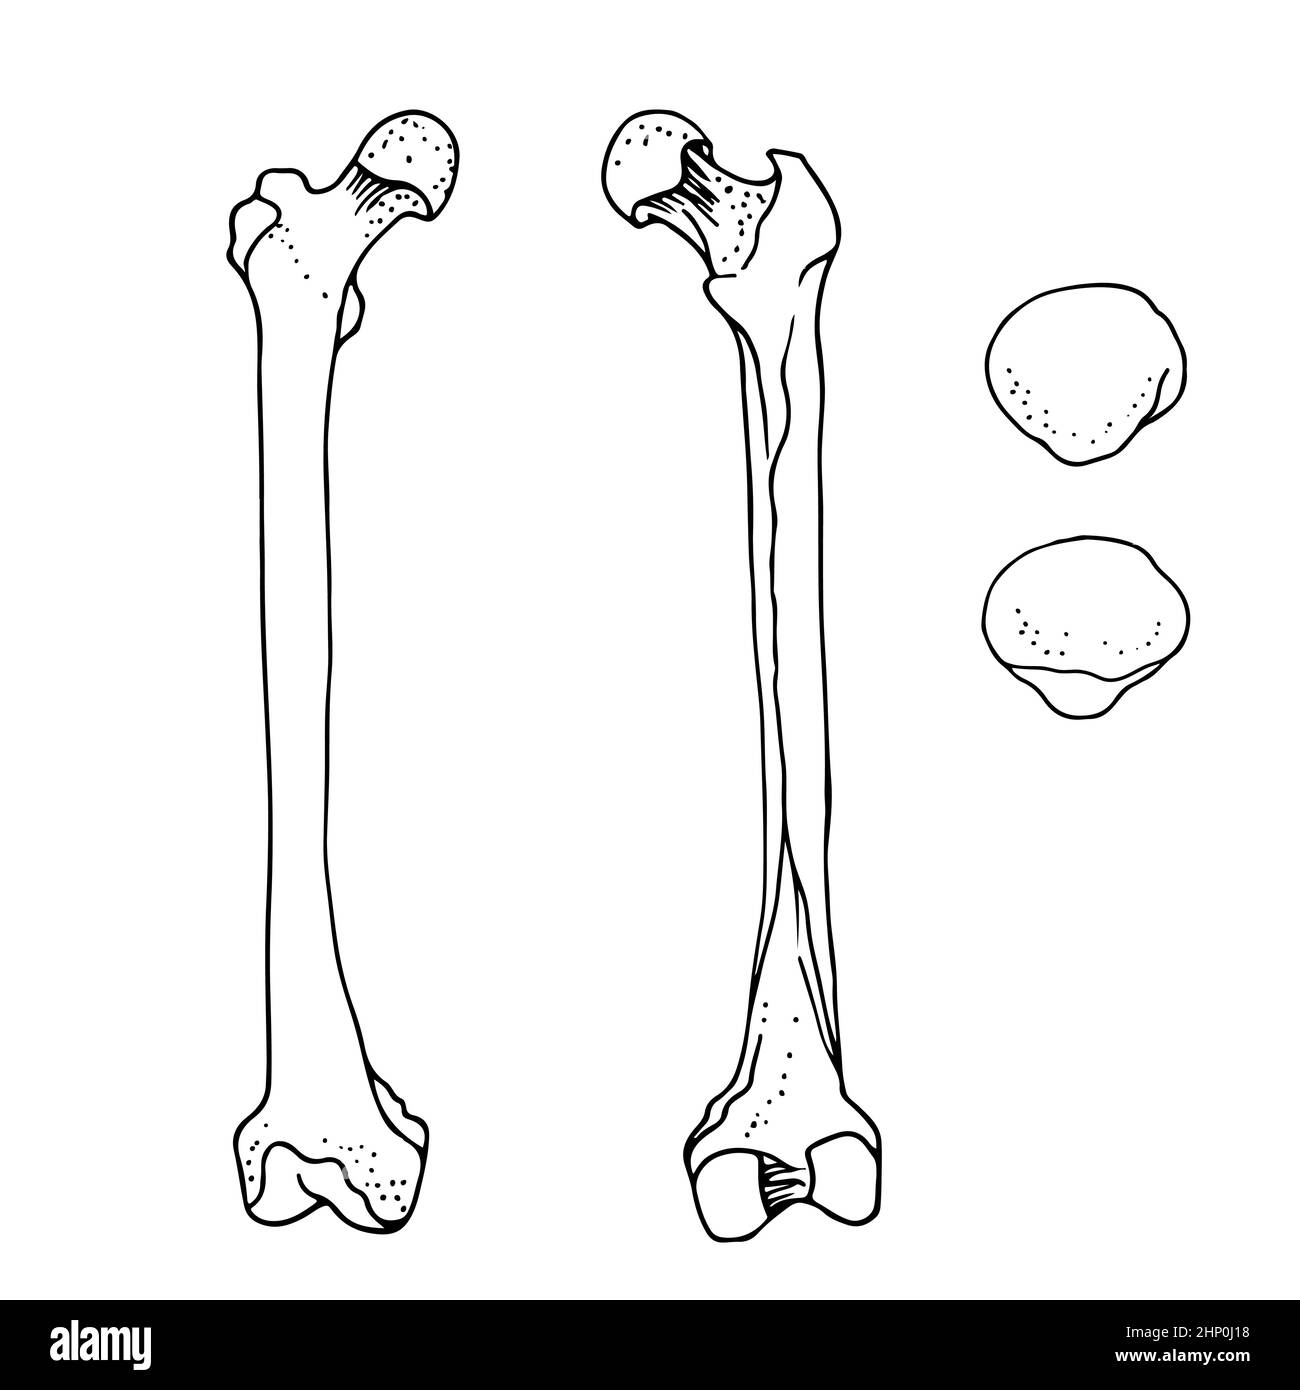 Humaner Femur und Patella, Vektor-handgezeichnete Illustration isoliert auf weißem Hintergrund, orthopädische Medizin Anatomie Skizze Stock Vektor